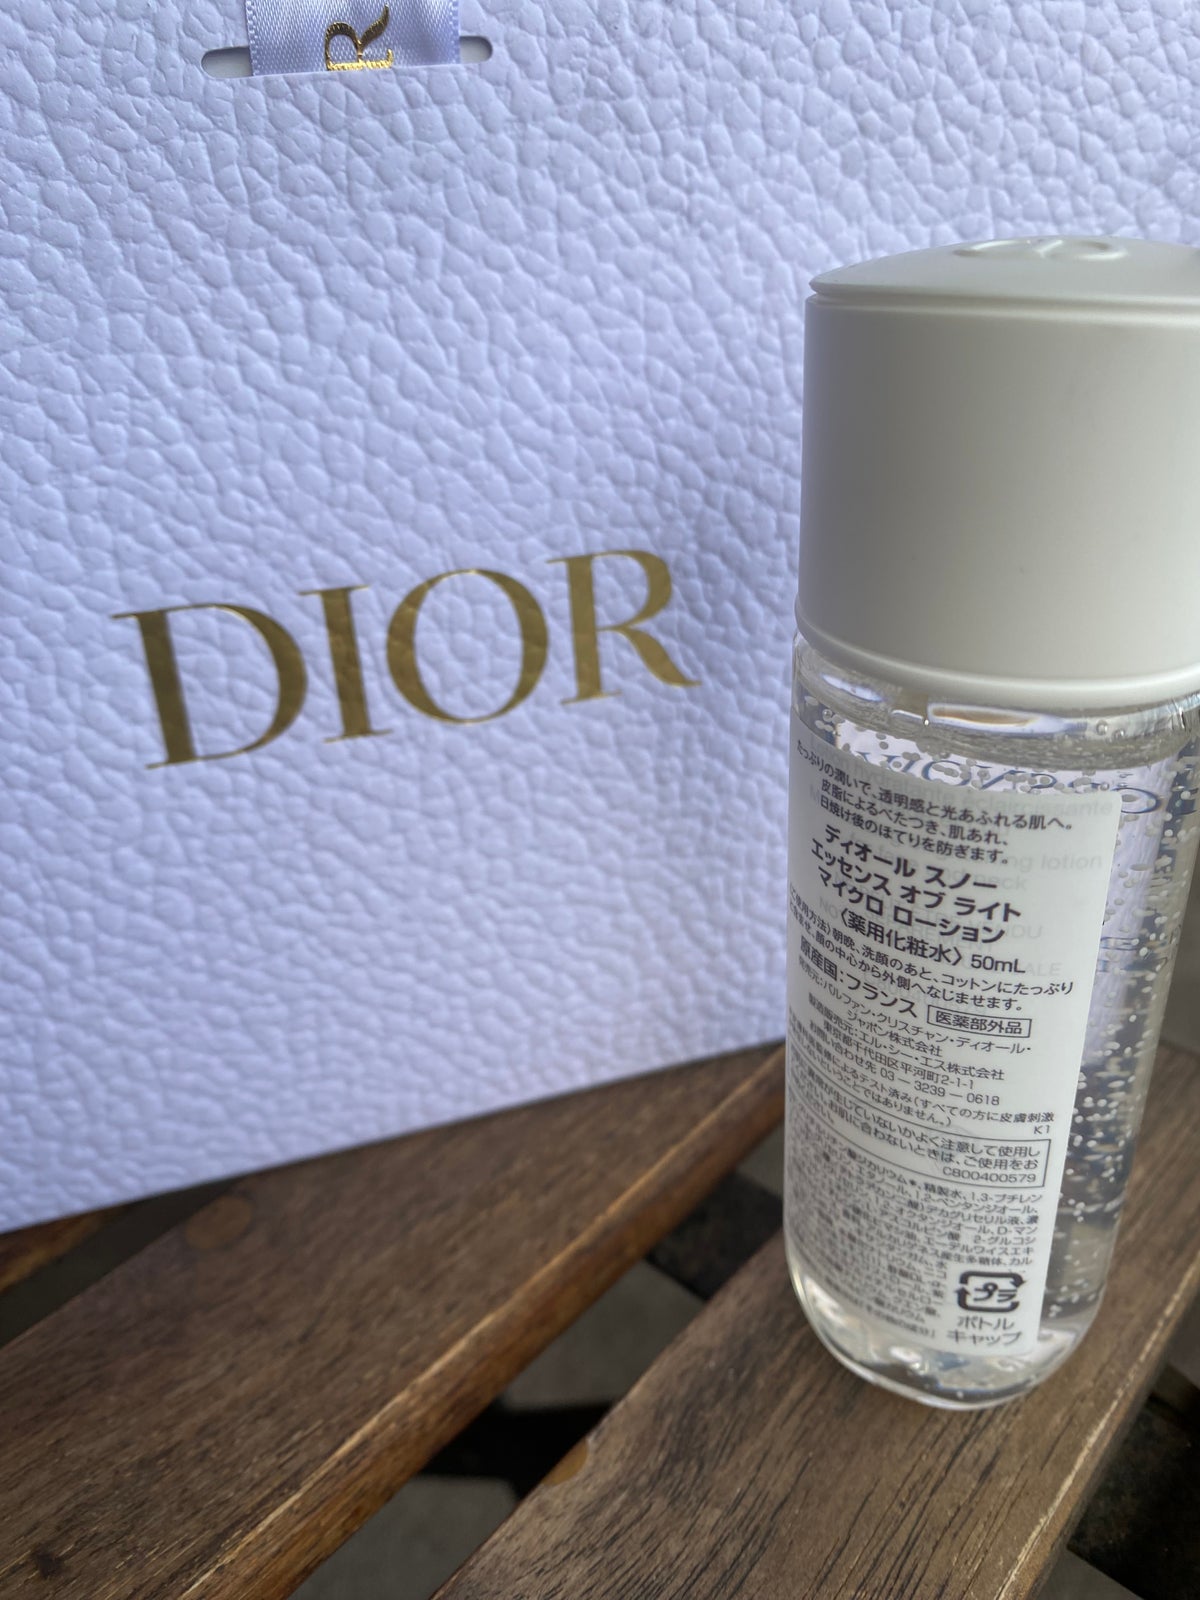 Dior スノー エッセンス オブ ライト マイクロ ローション (薬用化粧水)ChristianDior